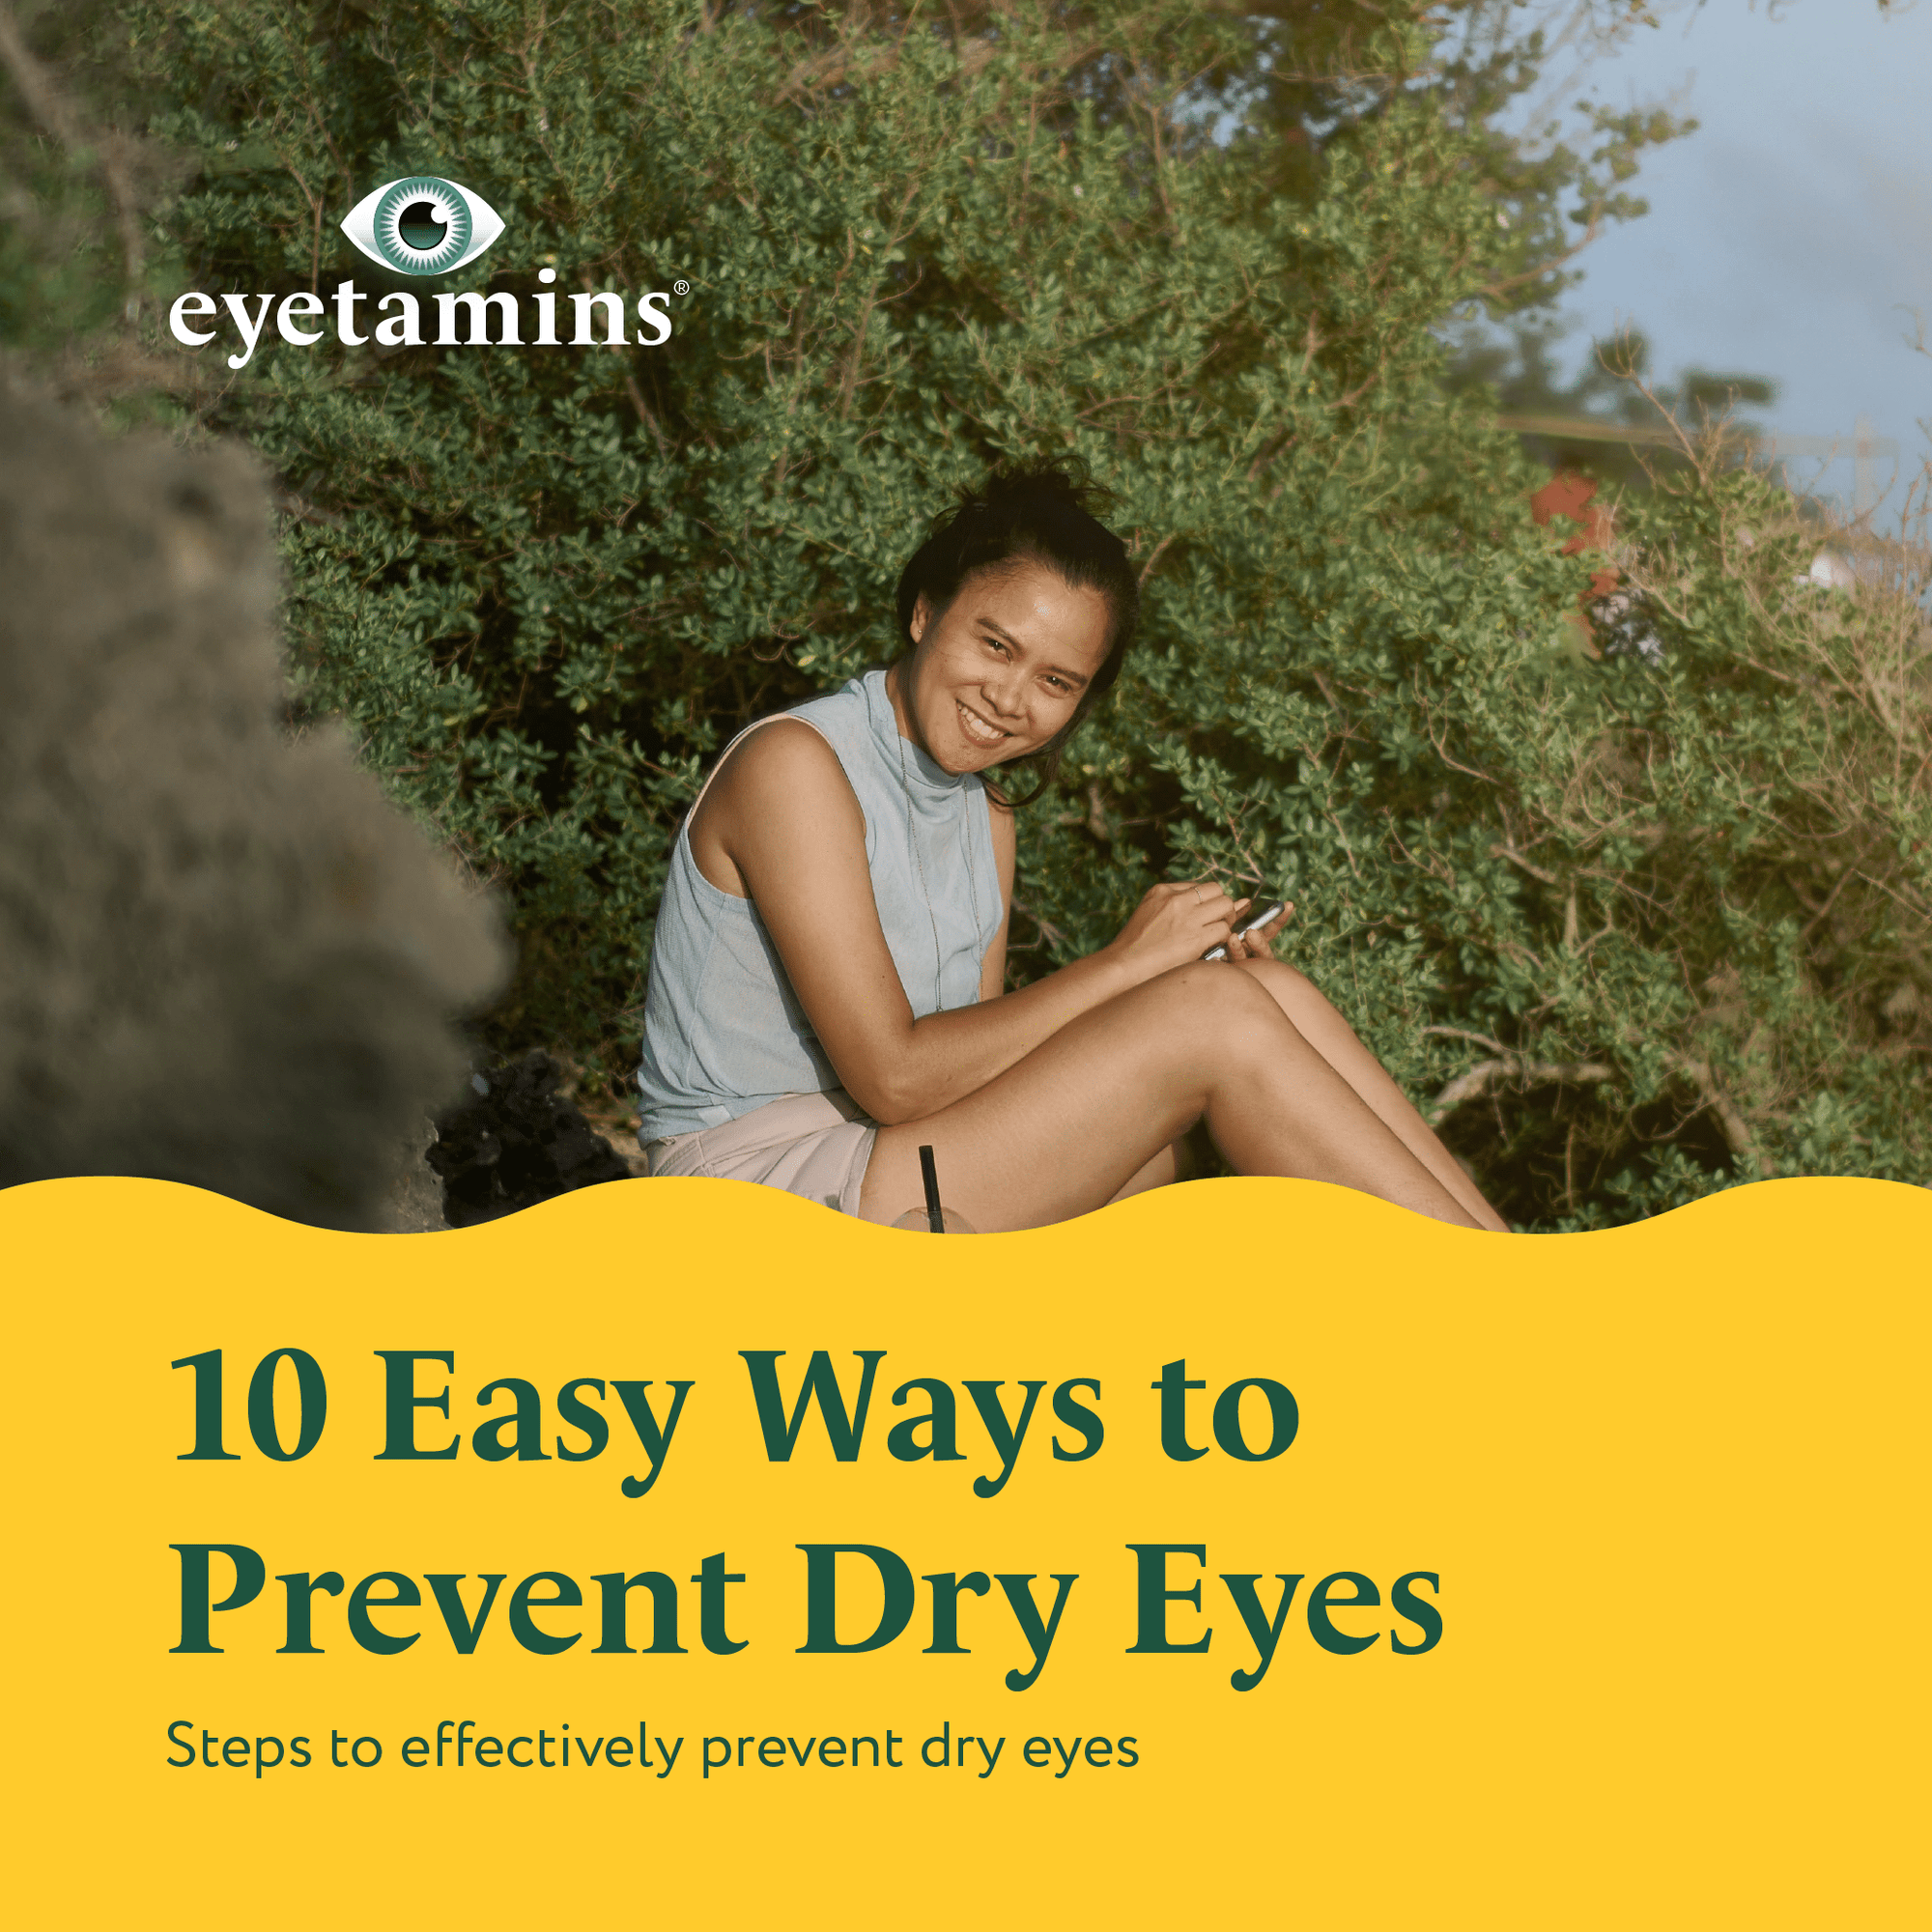 Eyetamins - 10 Easy Ways to Prevent Dry Eyes